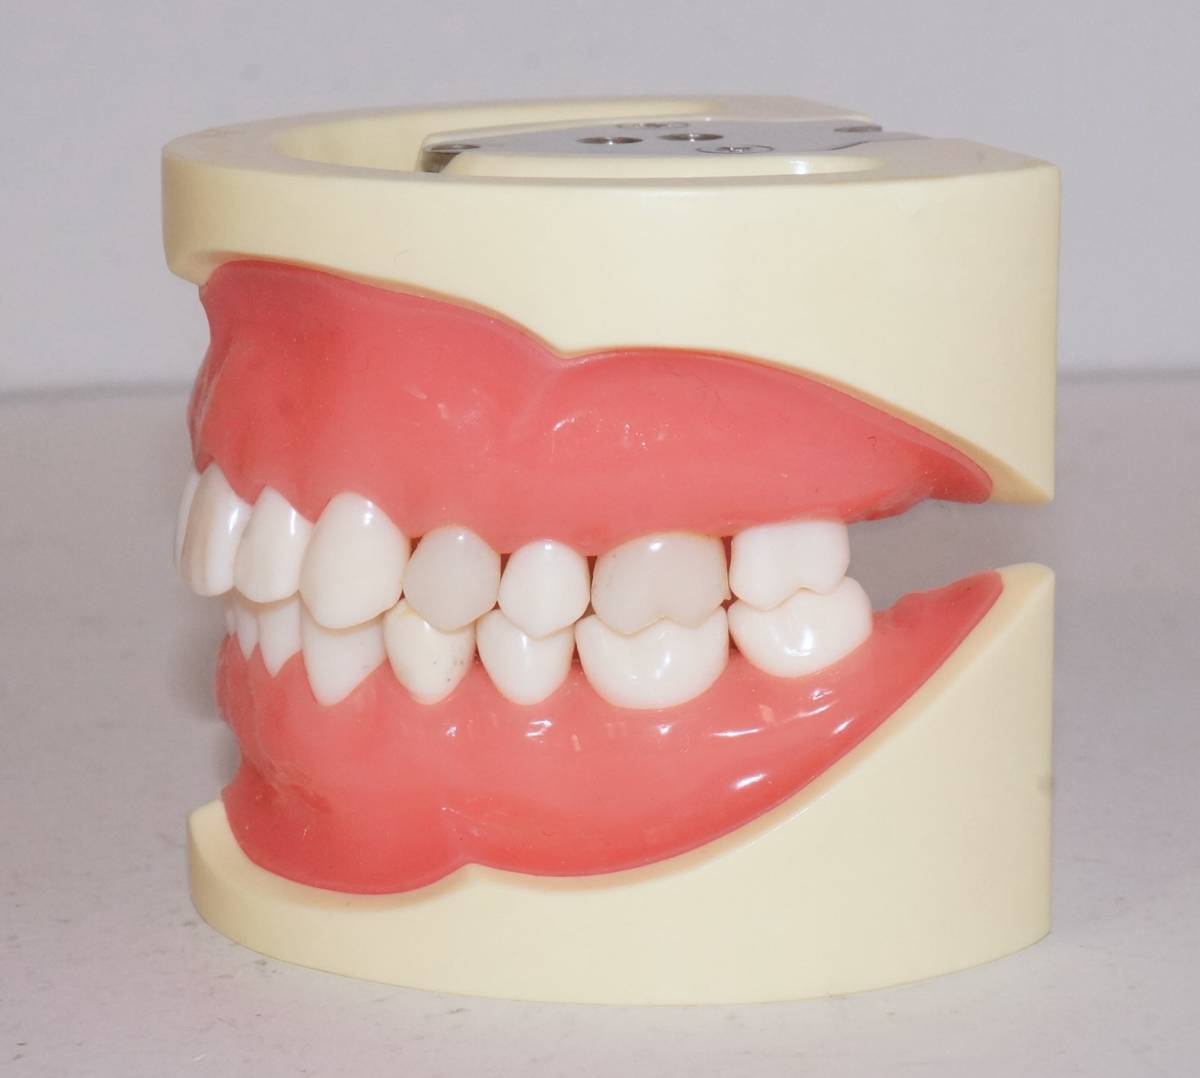 NISSIN 歯科 模型 顎模型 D16 500E 保存修復実習用顎模型 歯科衛生士 ニッシン マネキン 保存修復 エンド ペリオ 舌 _画像8